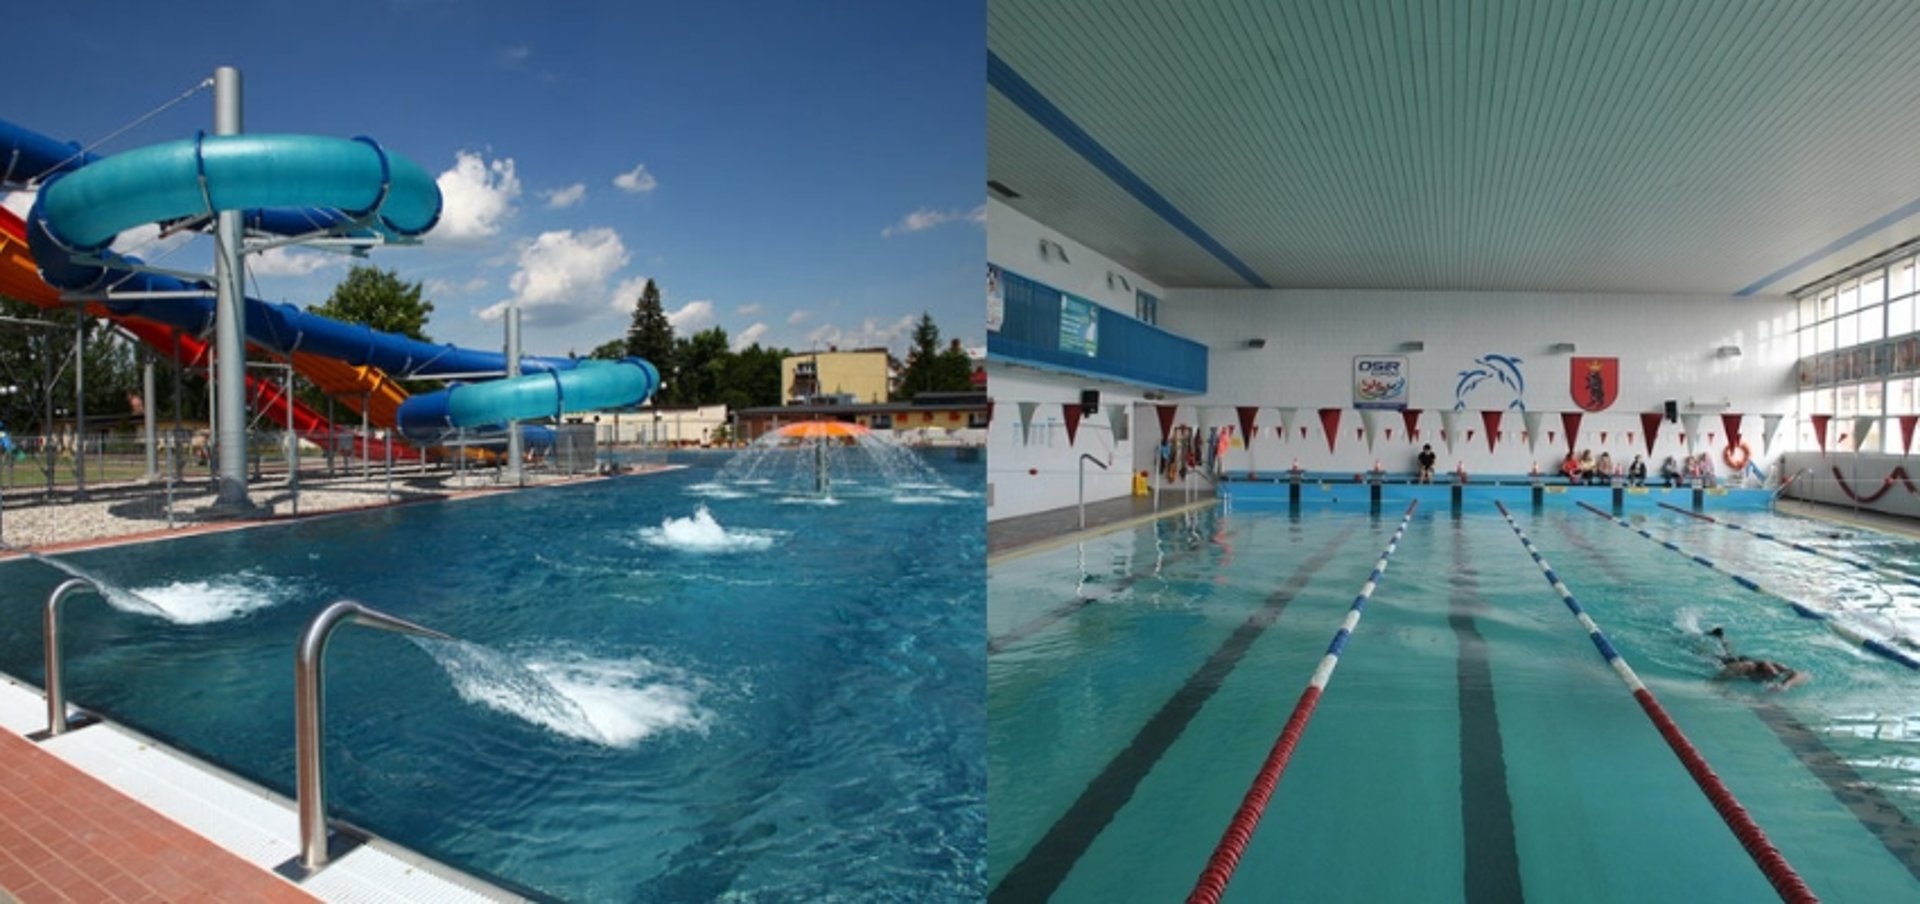 Ośrodek Sportu i Rekreacji w Łukowie - pływalnia Delfinek i Delfin